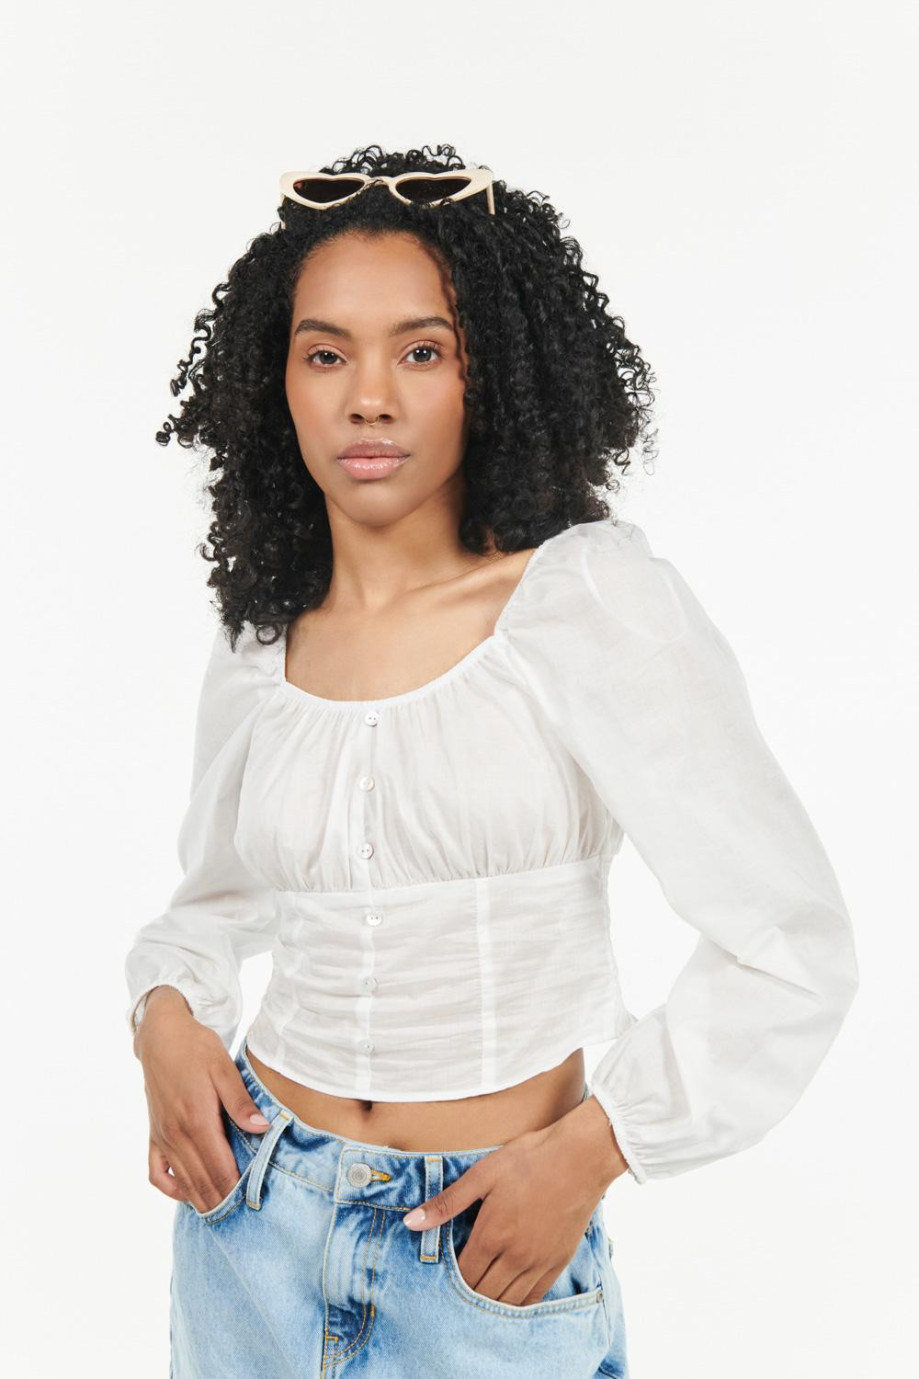 Blusa manga larga blanca con escotes volantes decorativos